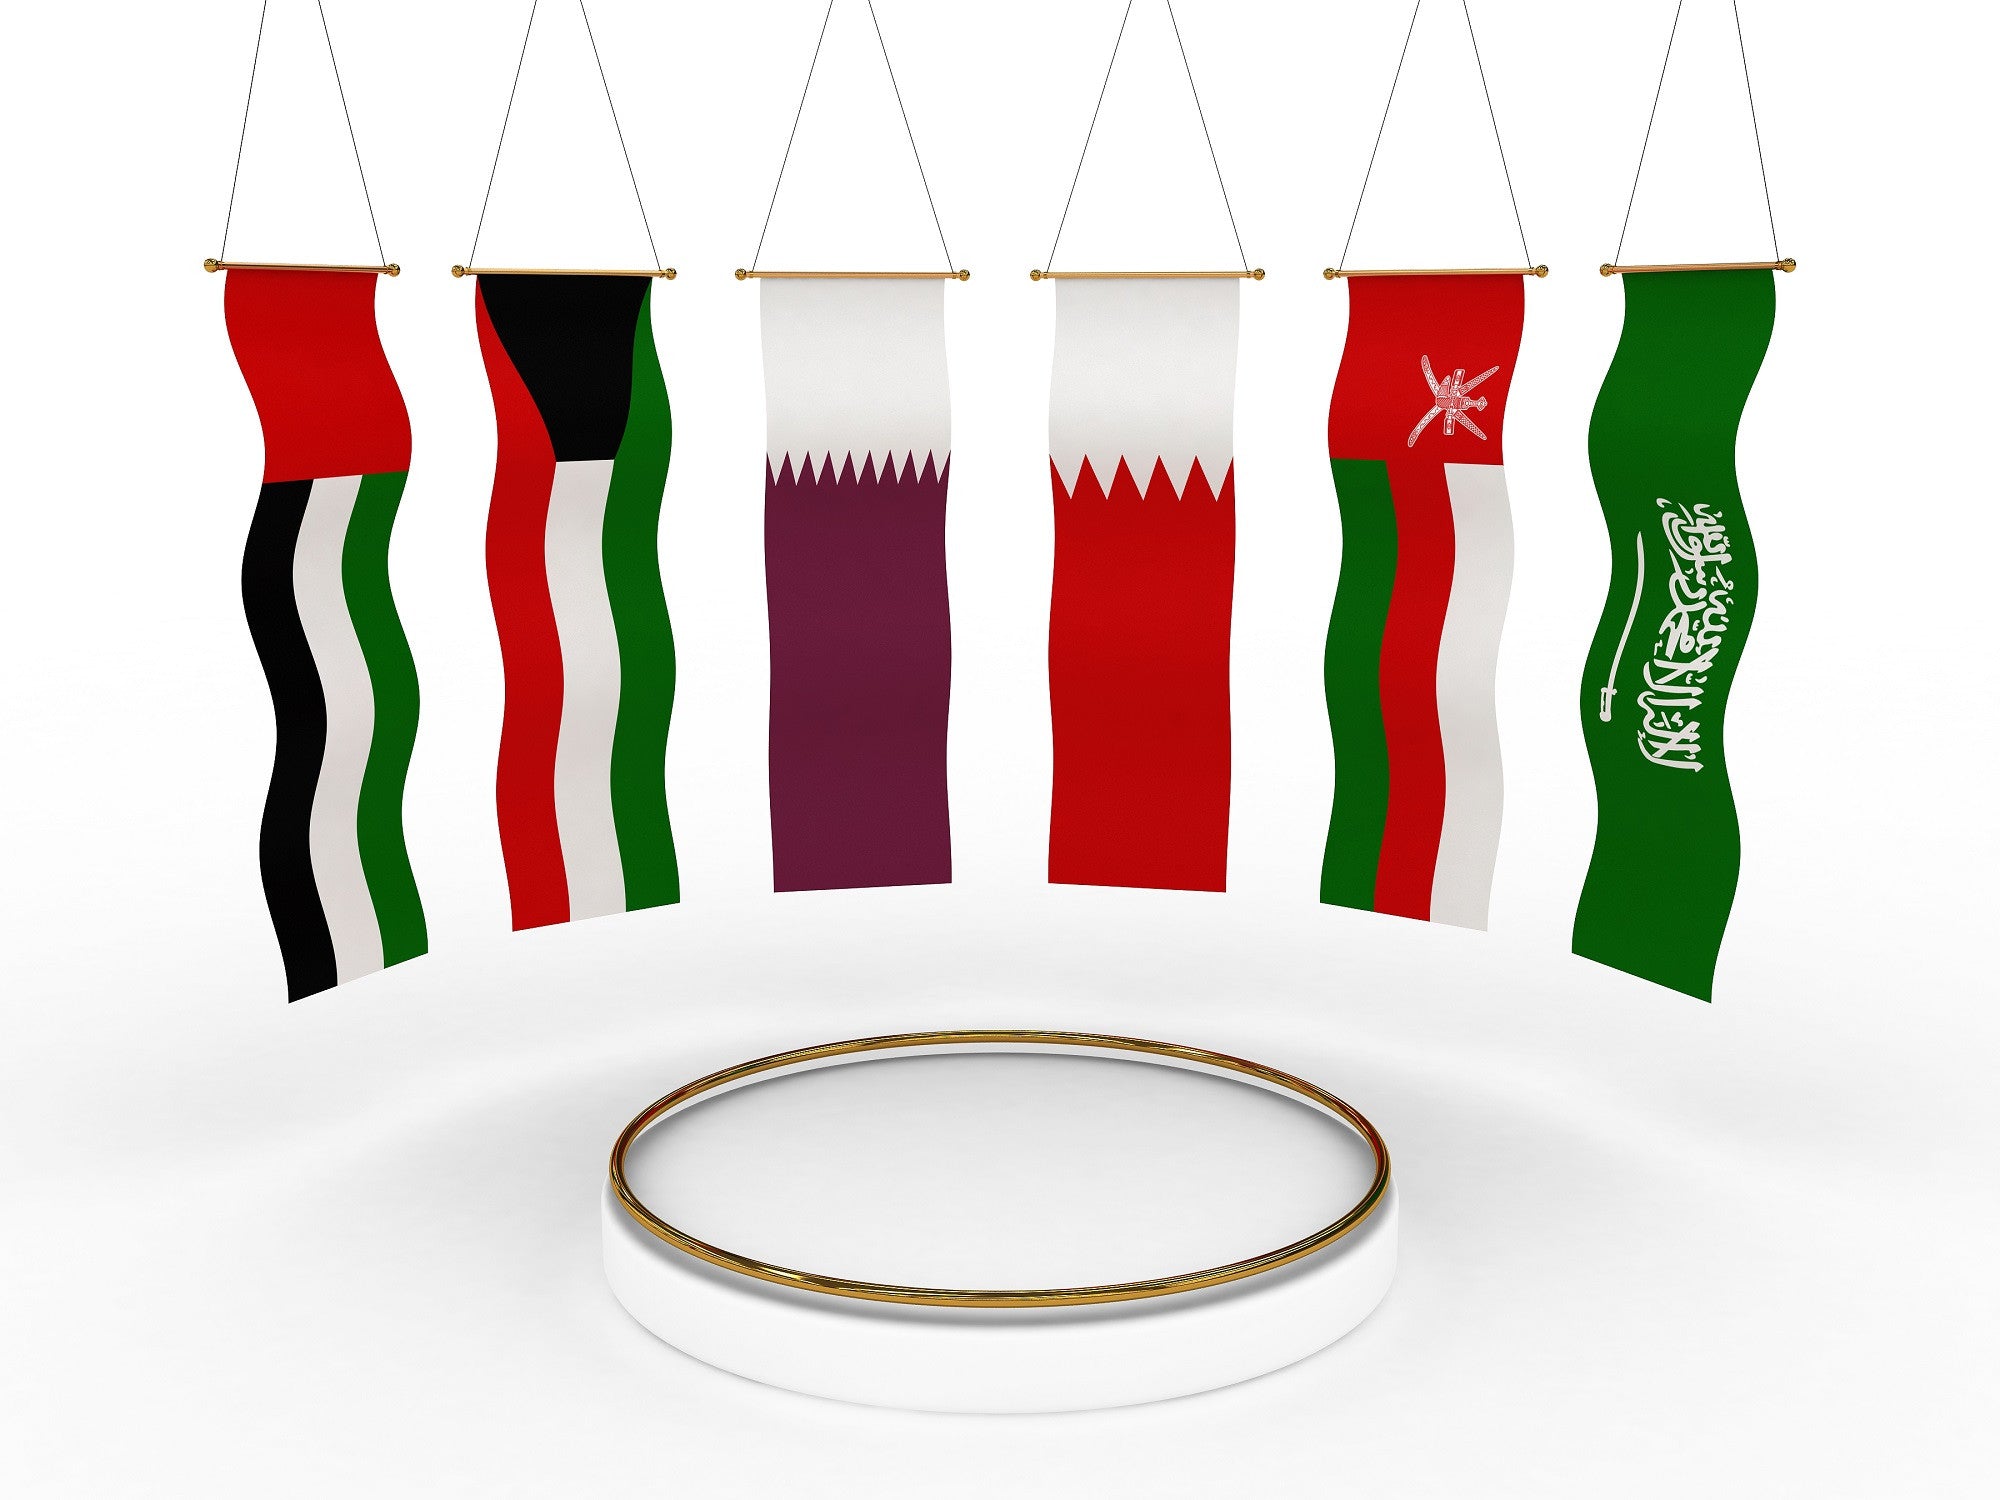 شراء زيارات من الخليج العربي مكس - سوشيال الخليج